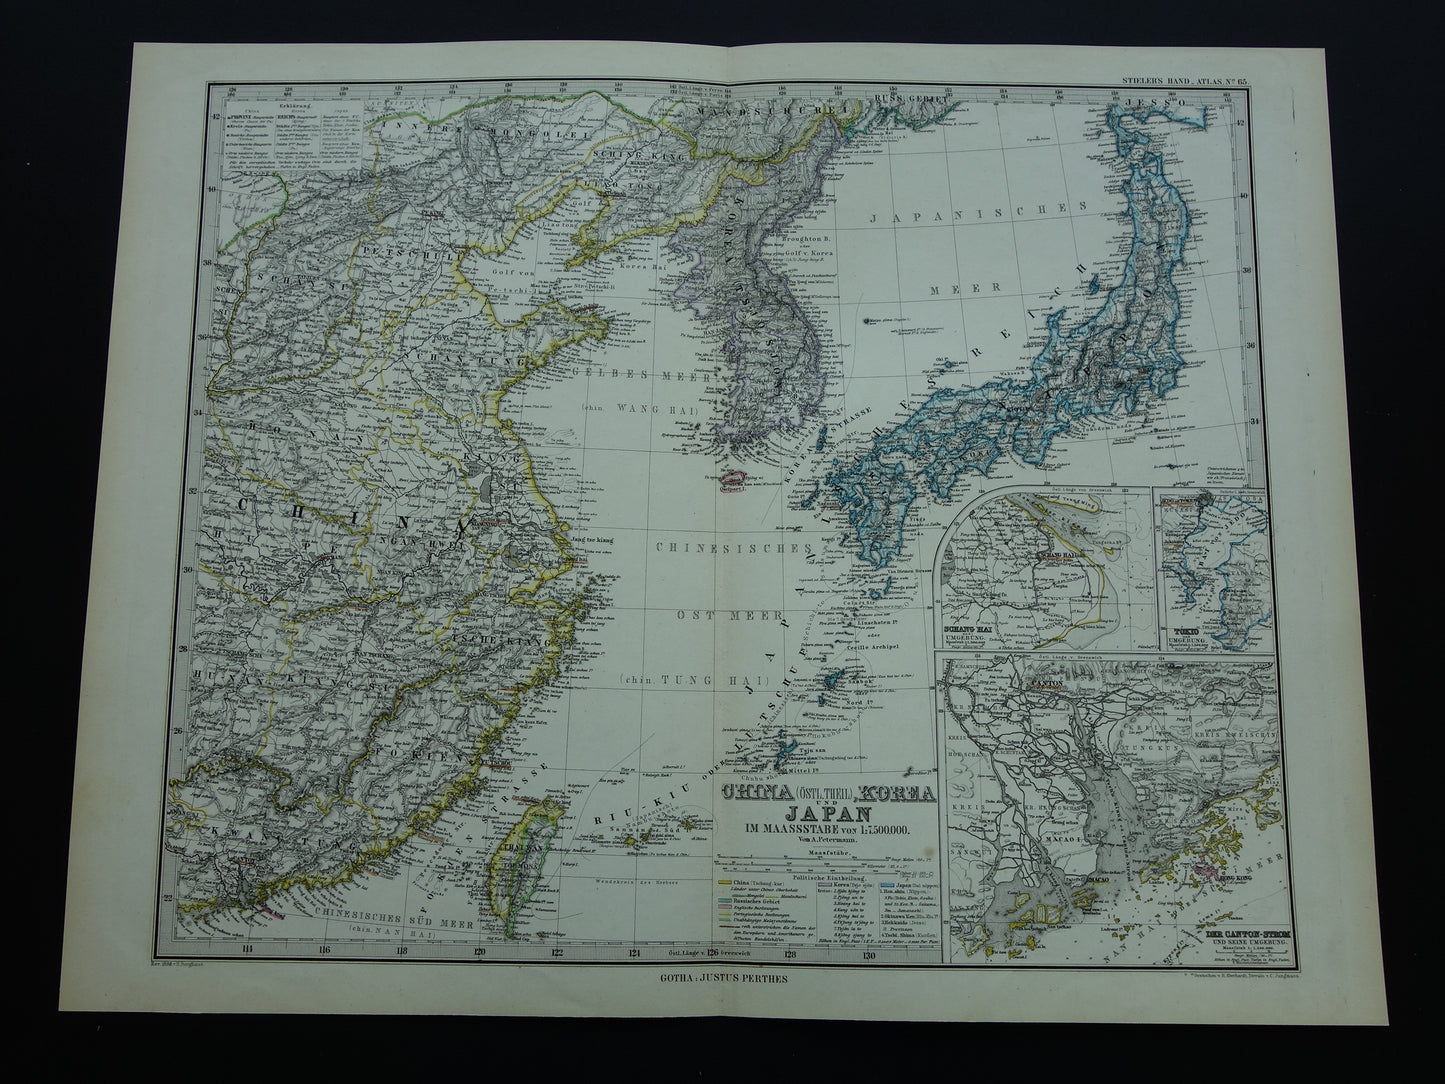 CHINA KOREA JAPAN oude gedetailleerde kaart uit 1886 originele antieke landkaart vintage poster Tokio Guangzhou Shanghai Taiwan